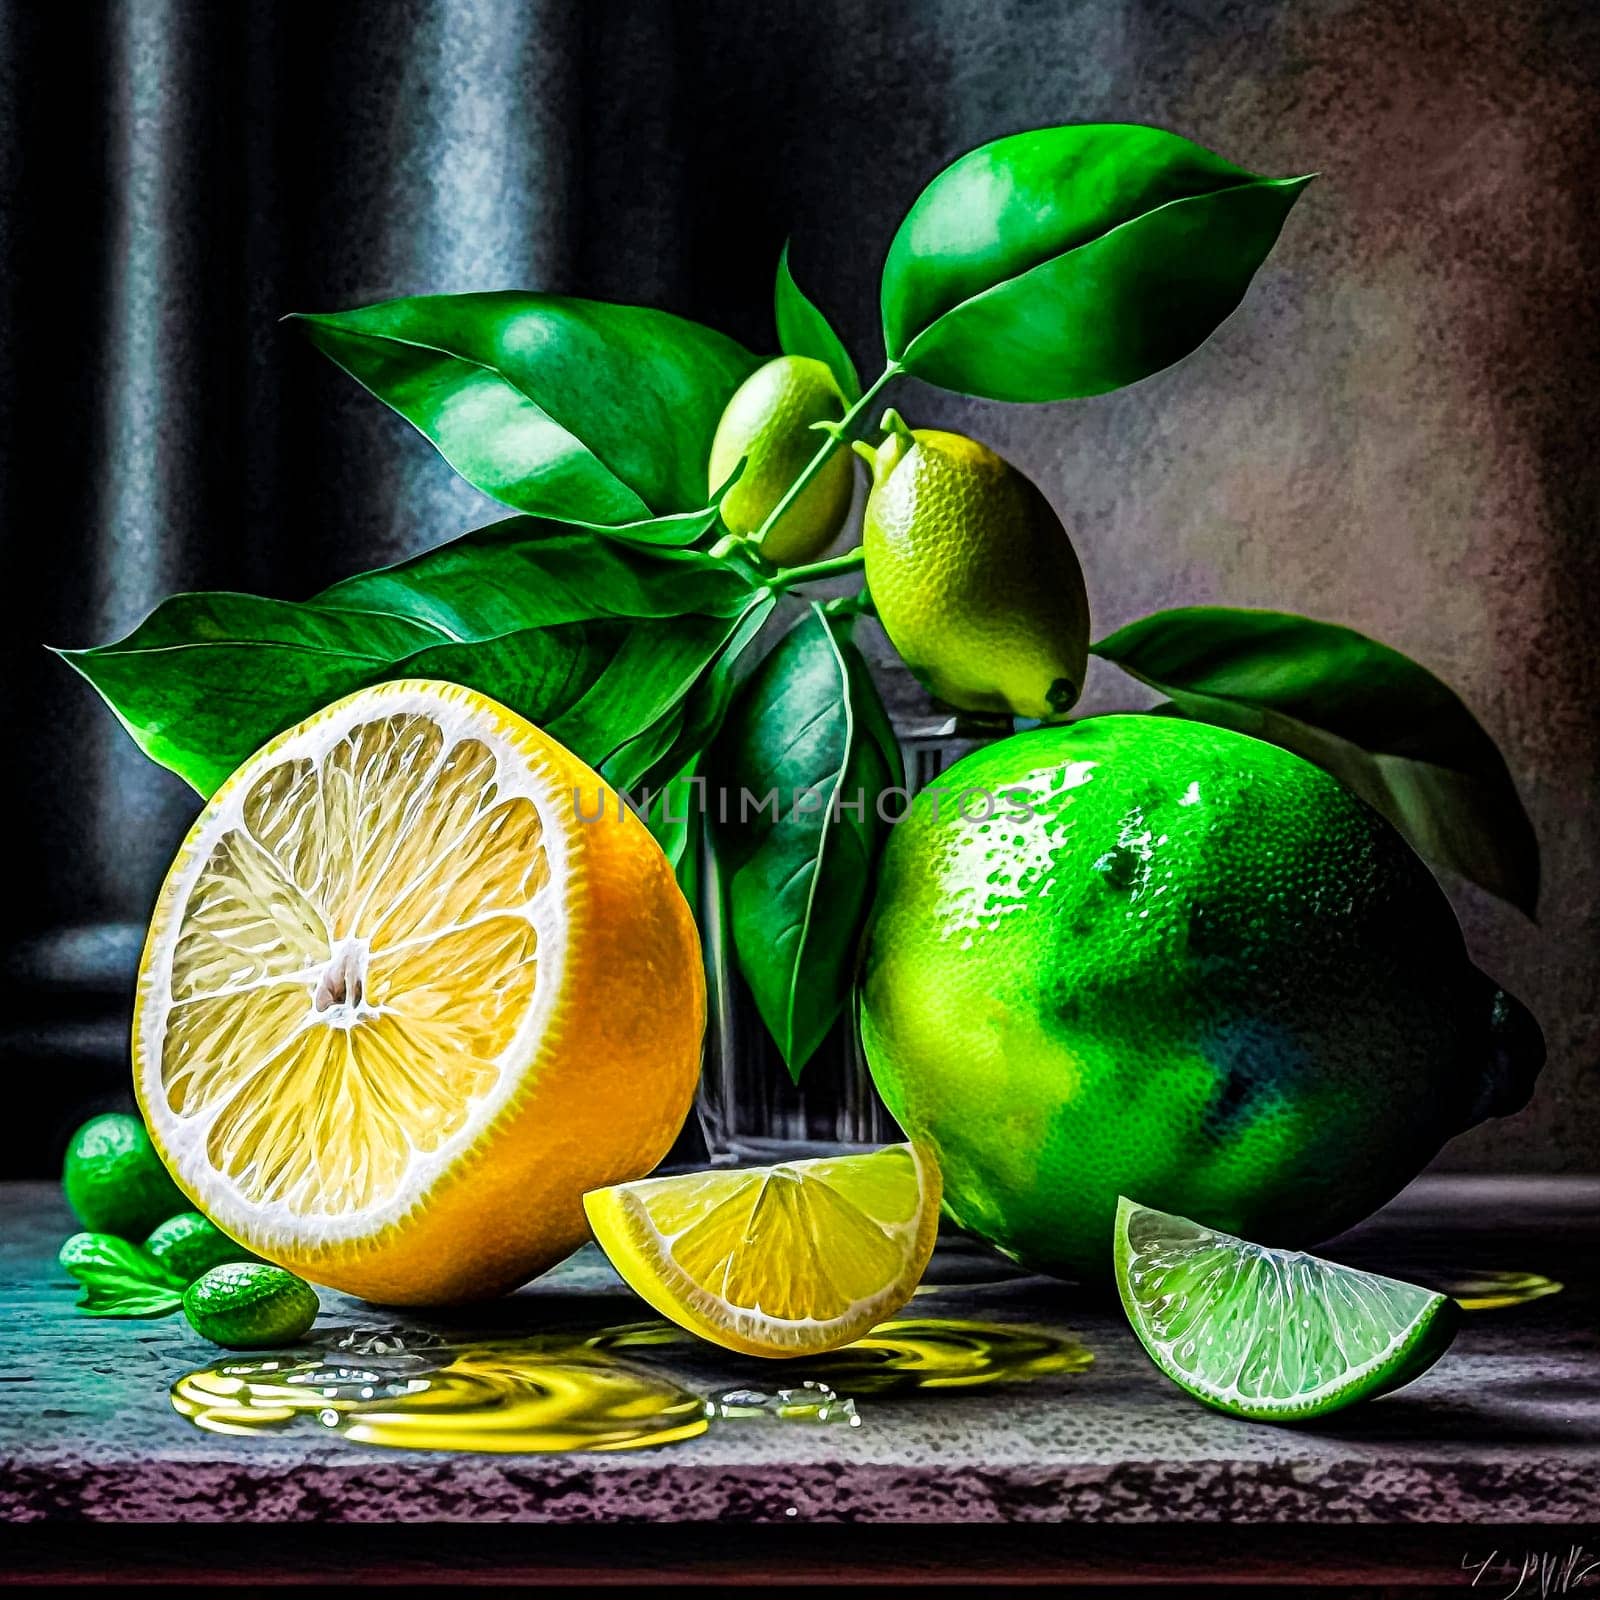 Stunning still life vibrant lemon pops against a dark backdrop by Alla_Morozova93